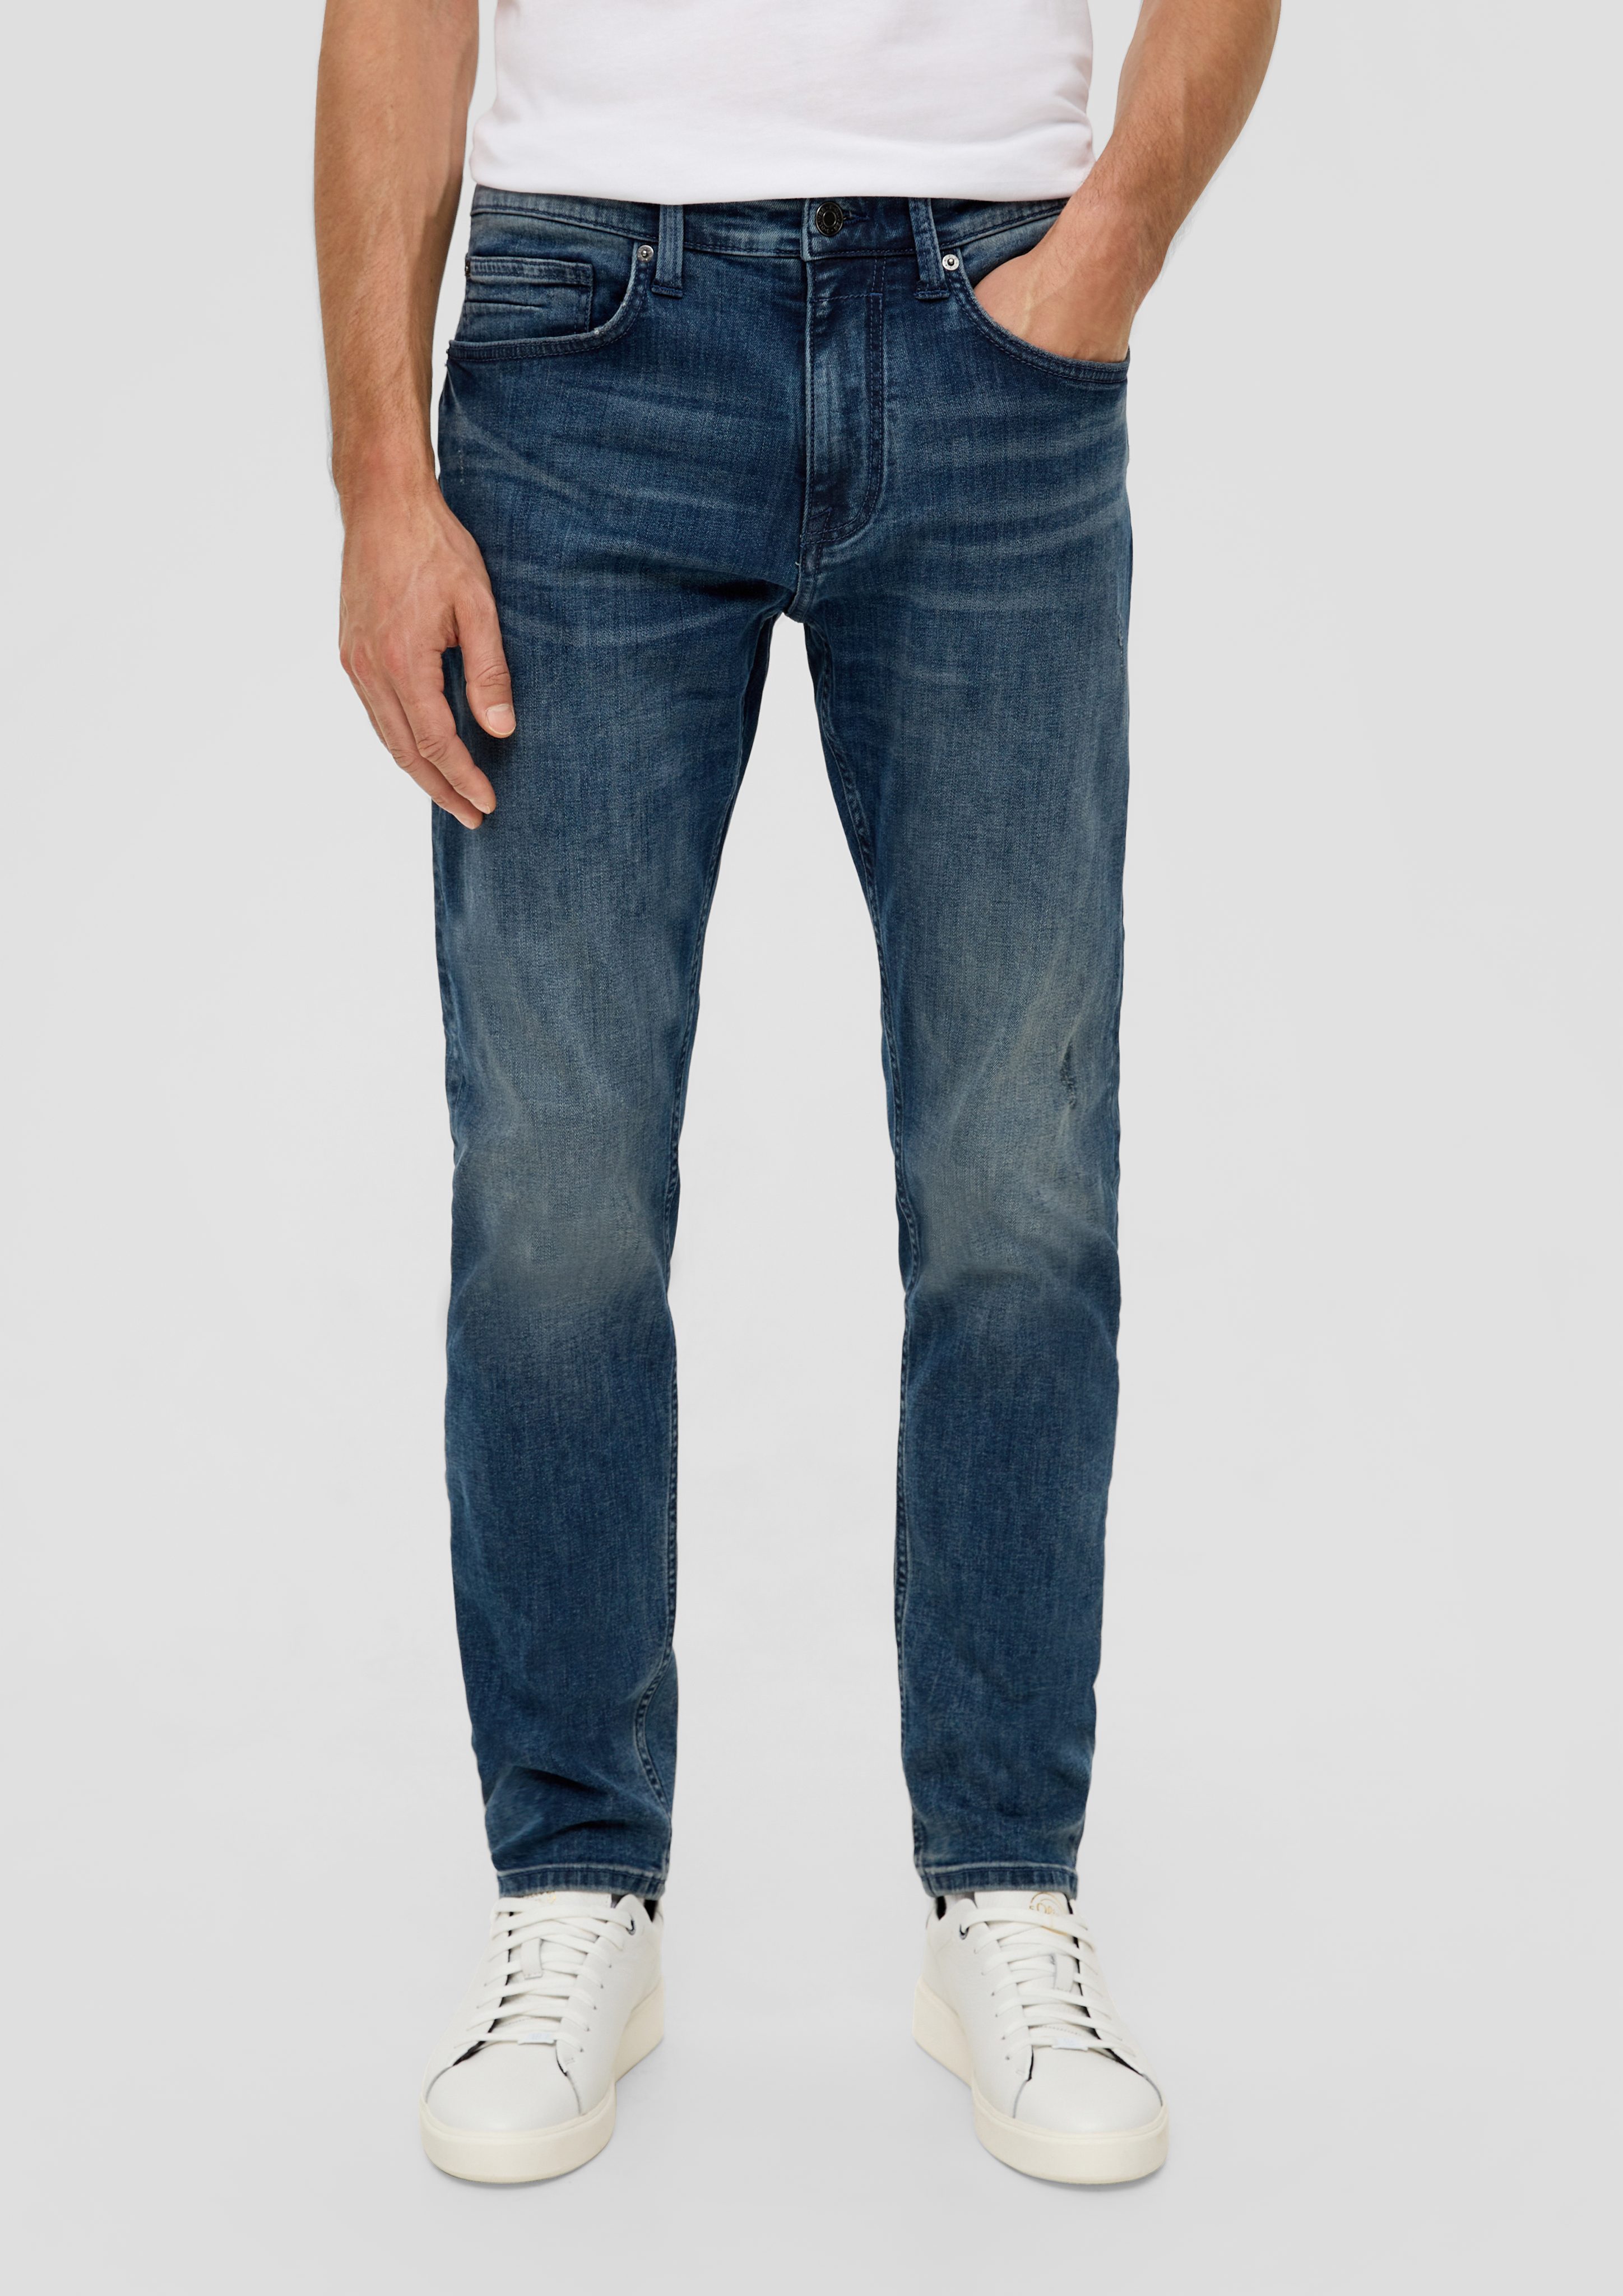 s.Oliver Stoffhose Jeans / Leg Fit Tapered Waschung Mid / Regular dunkelblau Rise 5-Pocket-Stil / / Leder-Patch